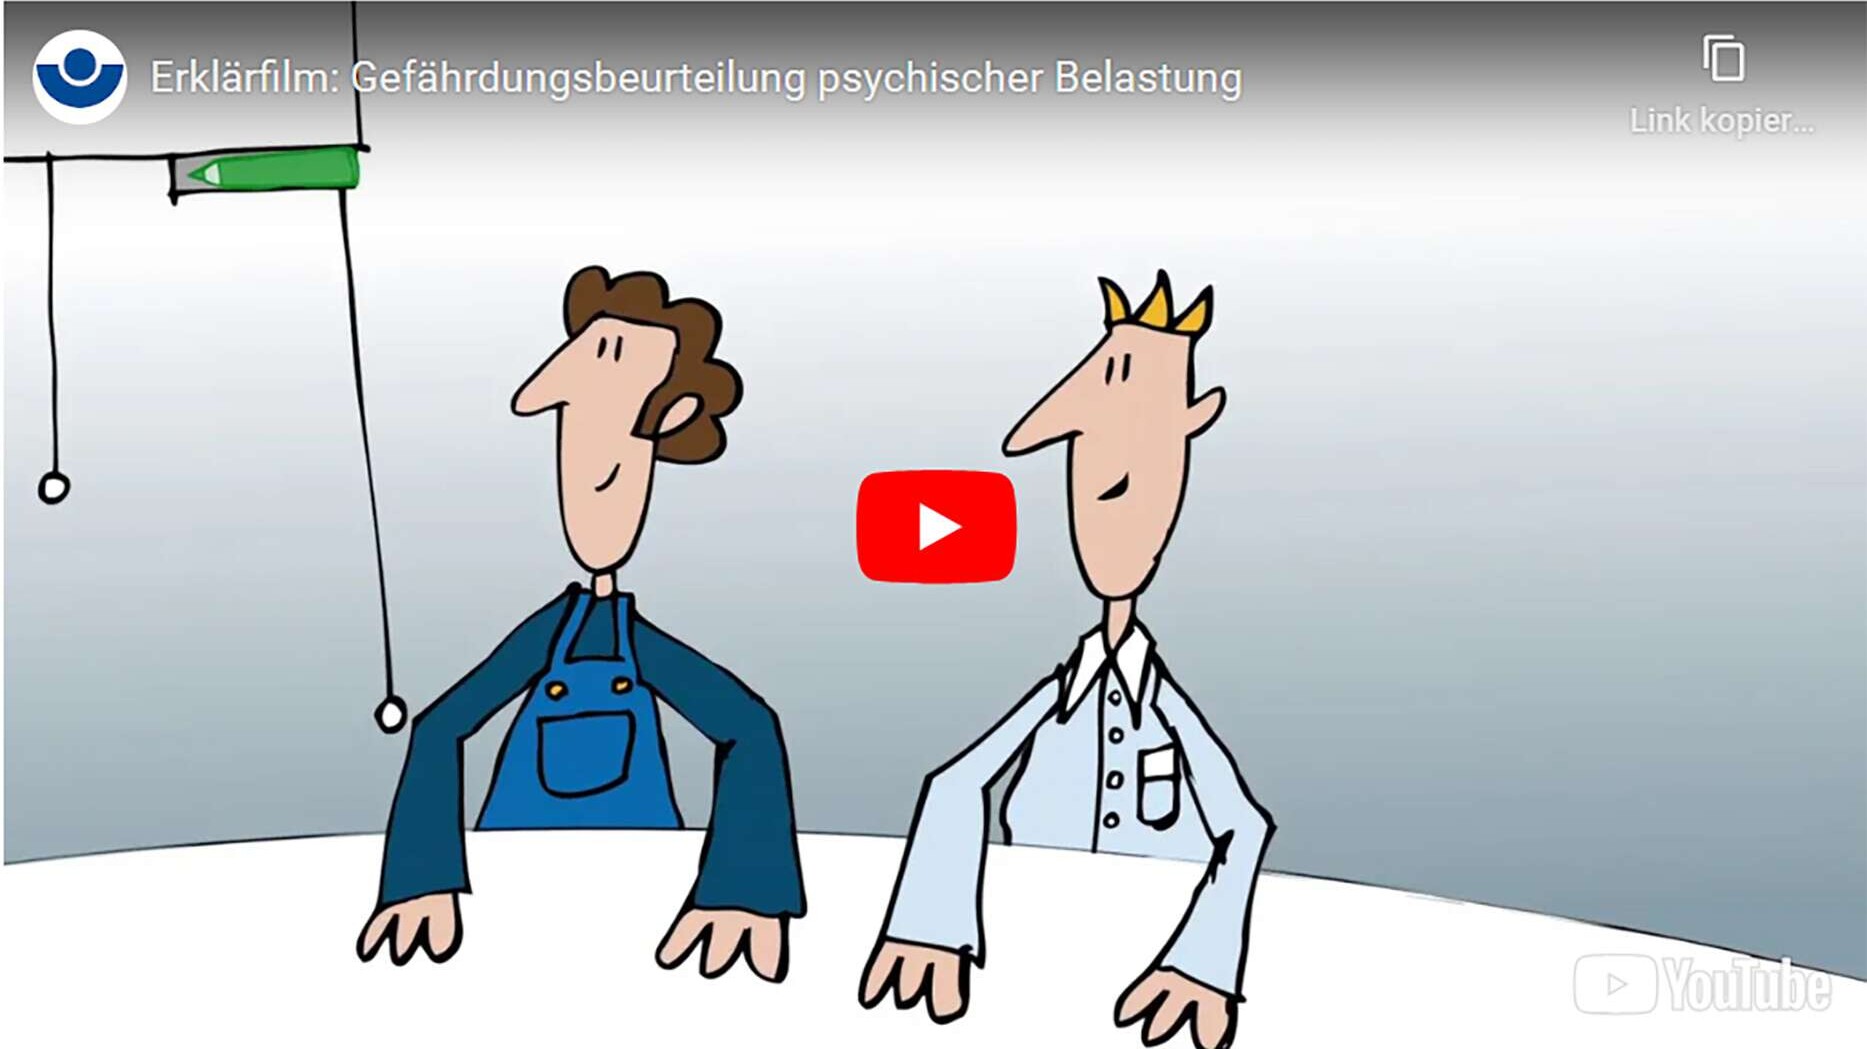 Startbild des Videos "Gefährdungsbeurteilung psychischer Belastung", Herausgeber BG BAU